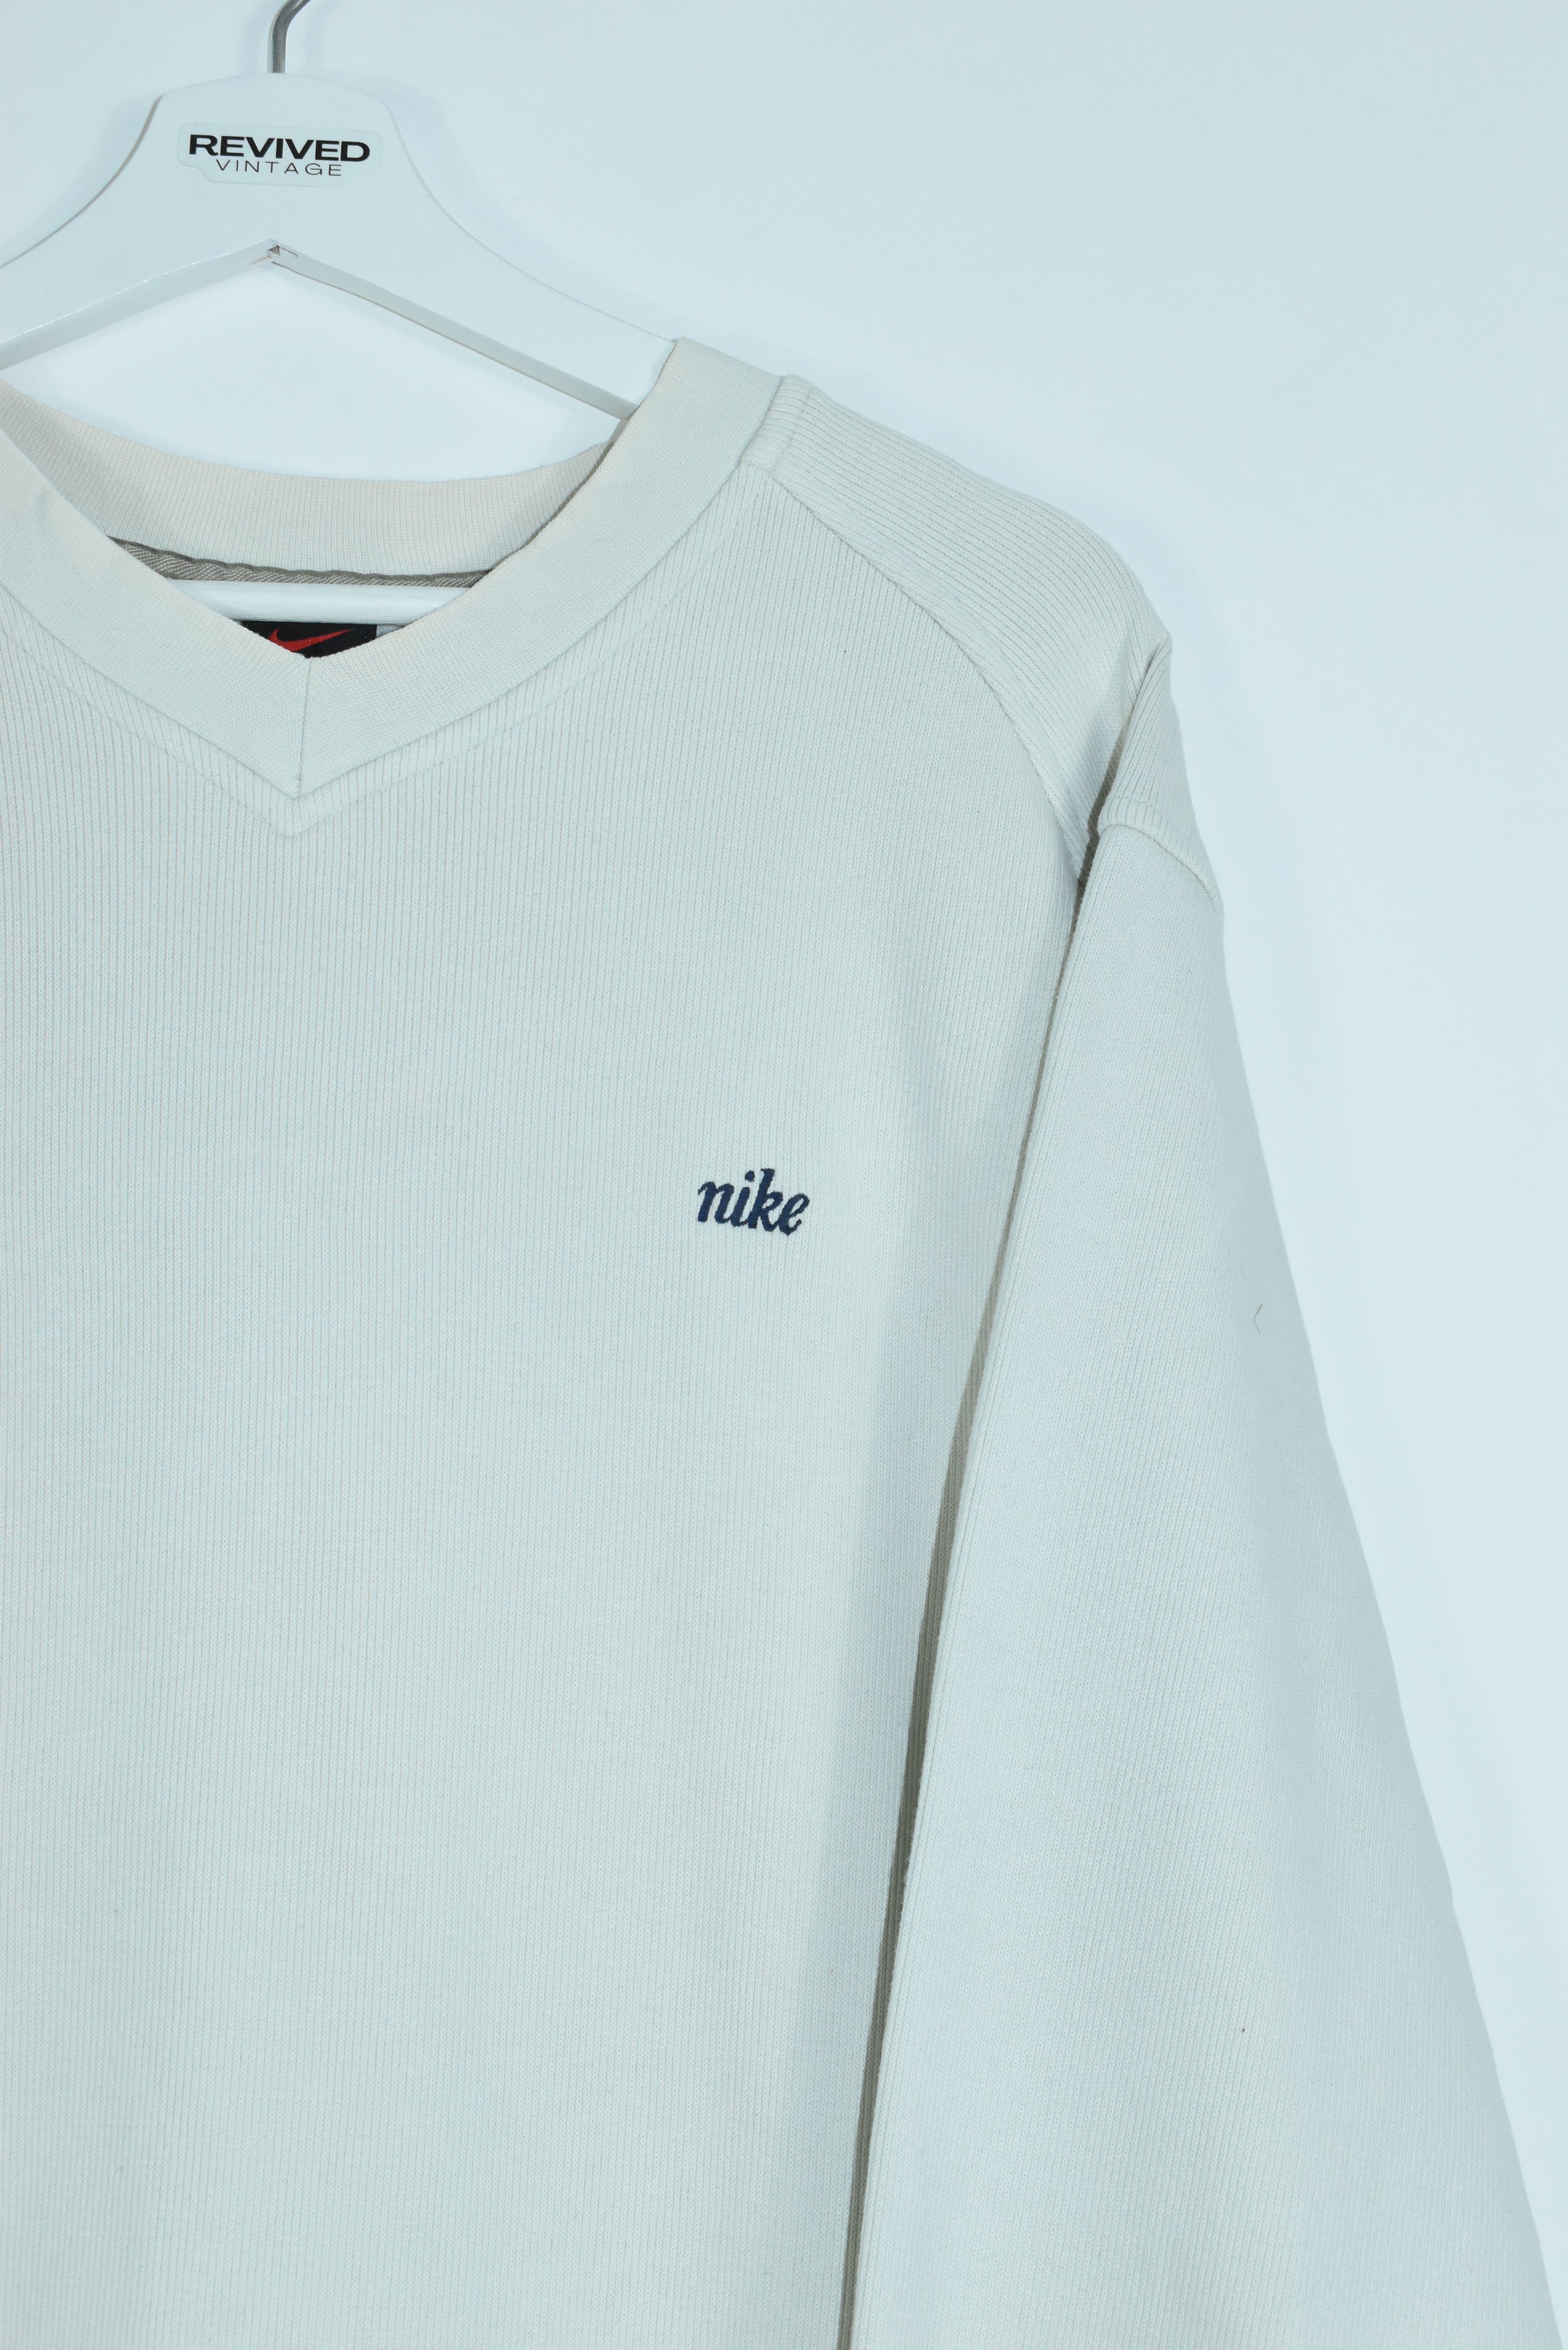 Vintage Nike Corduroy Embroidery Small Logo Sweatshirt Large (Baggy)